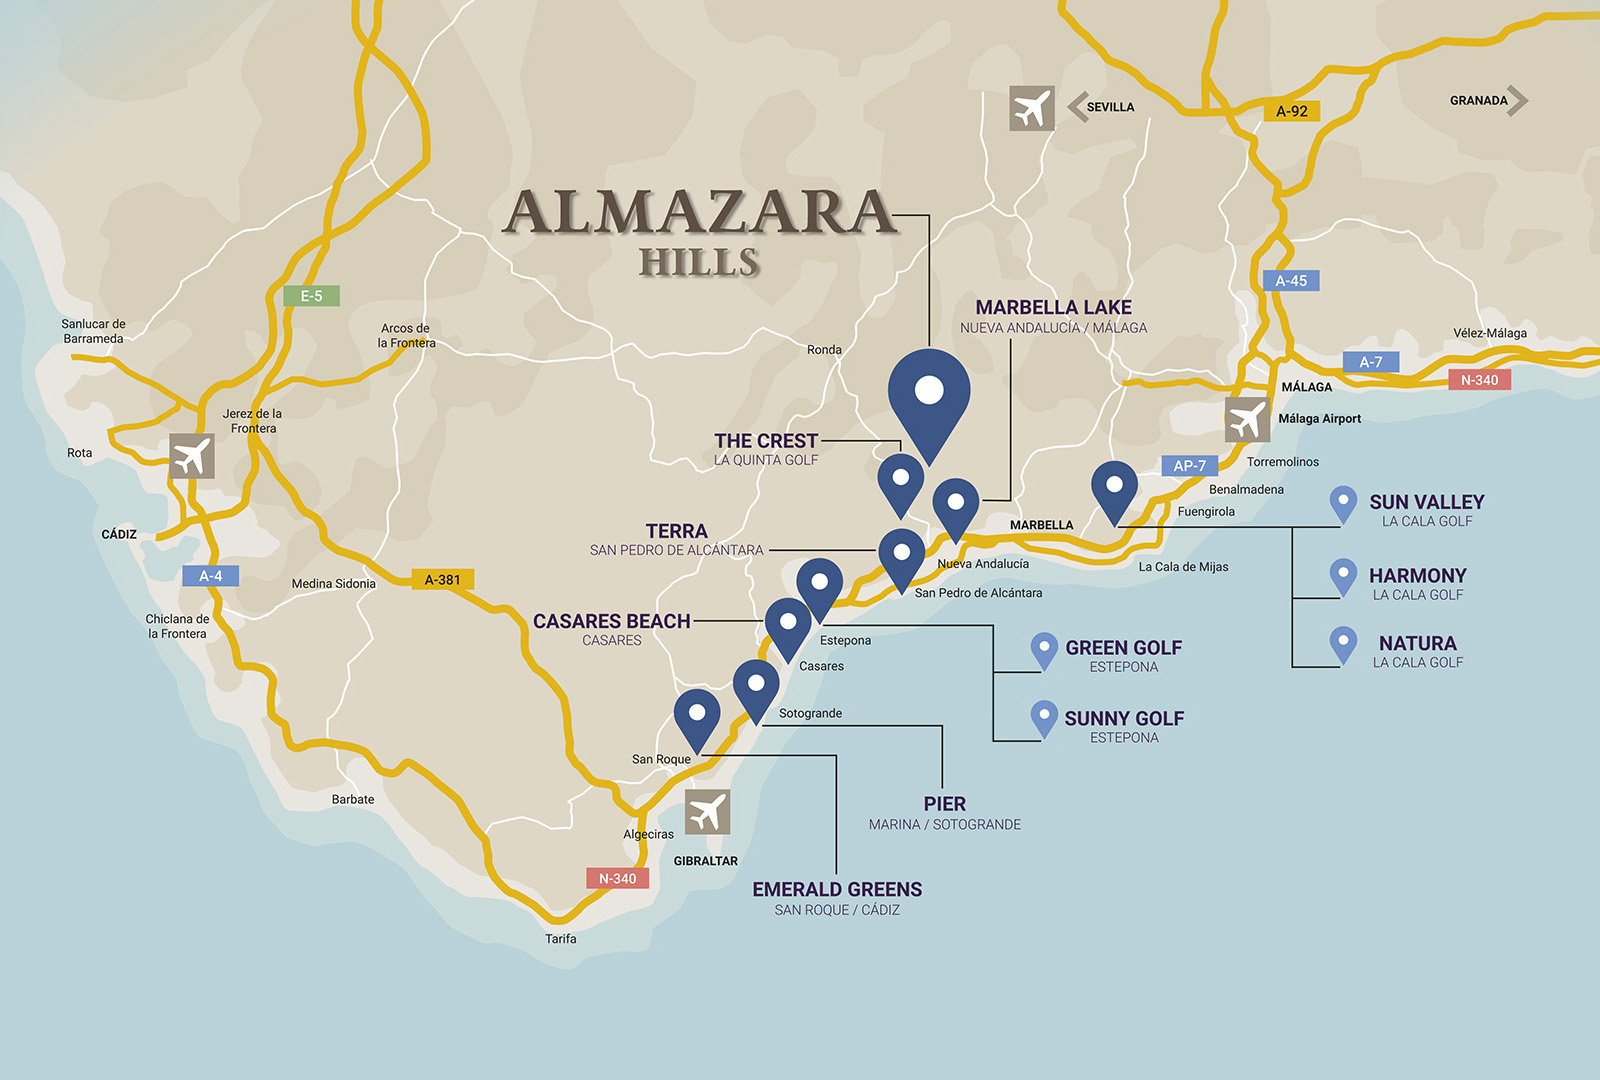 Mapa ALMAZARA movil es